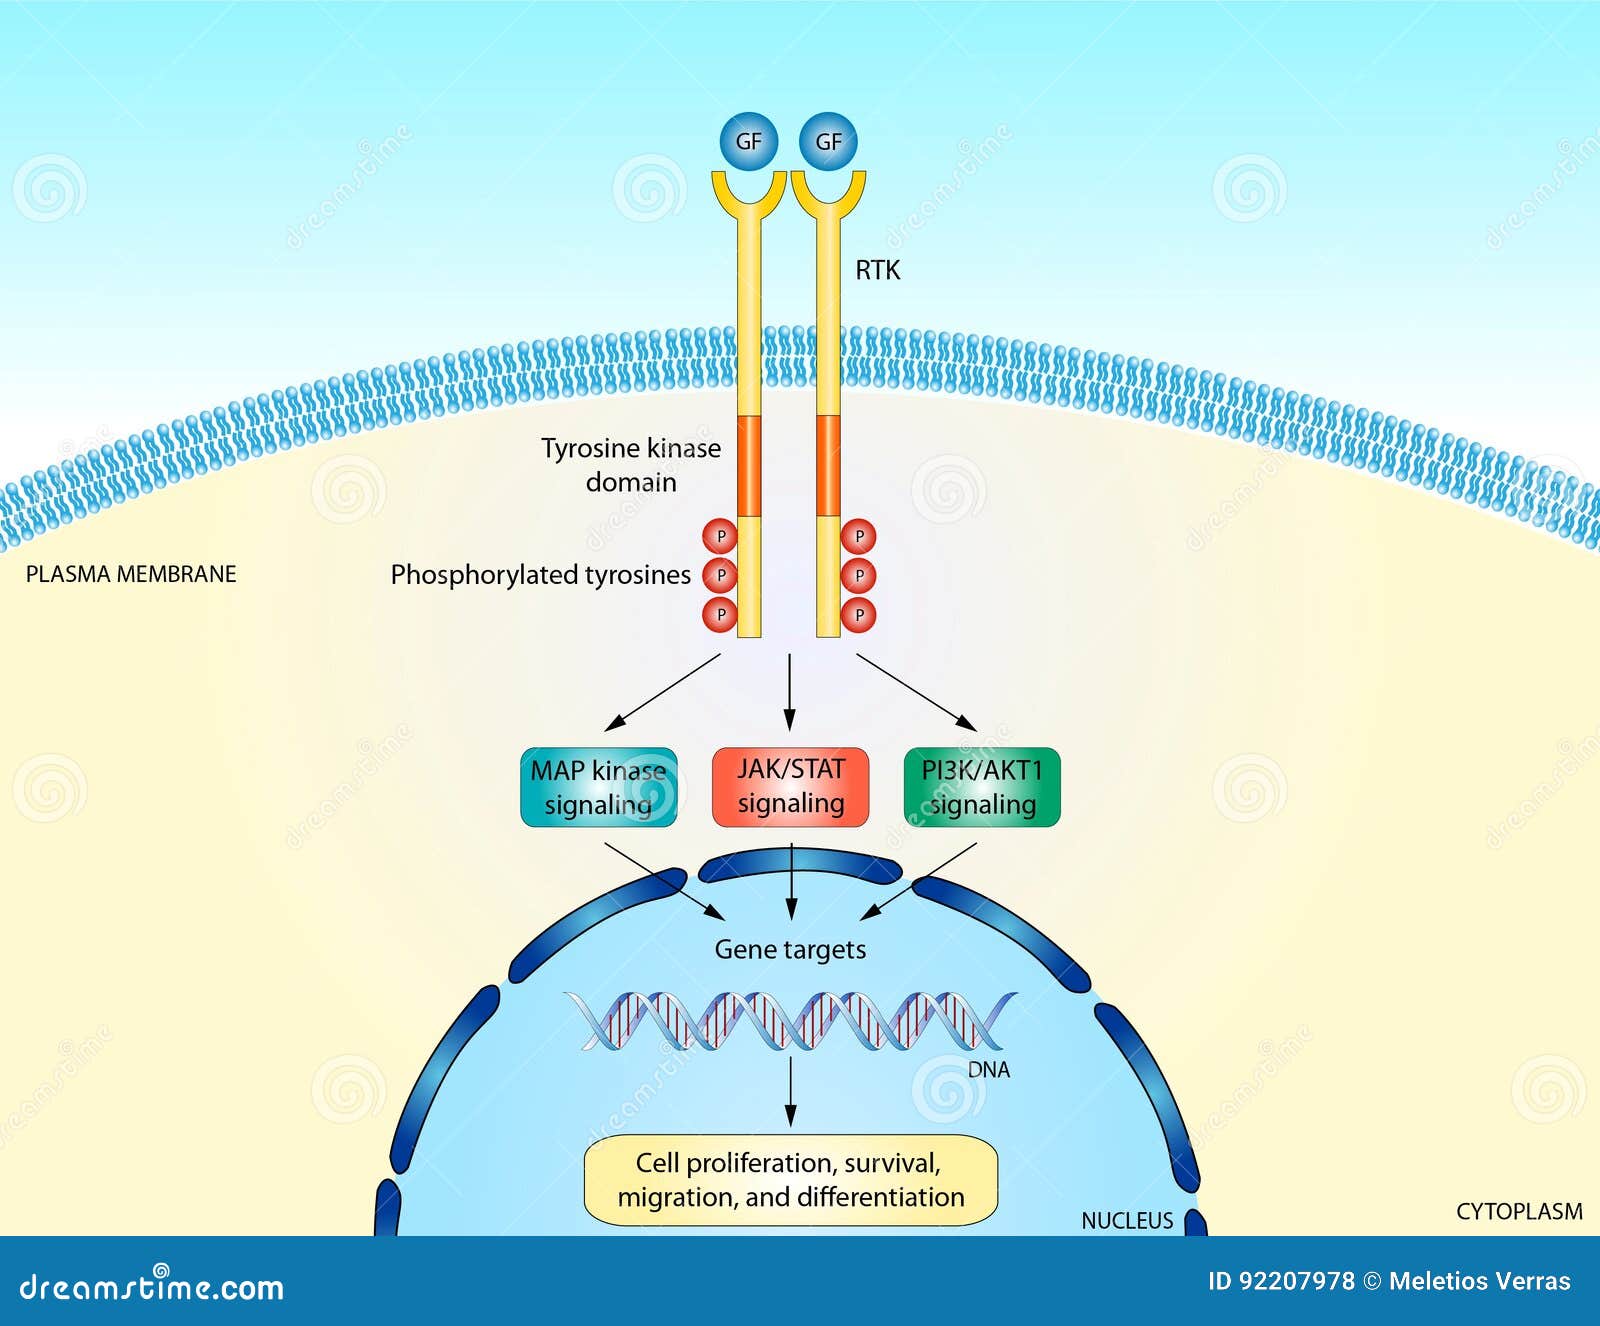 rtk signaling pathway